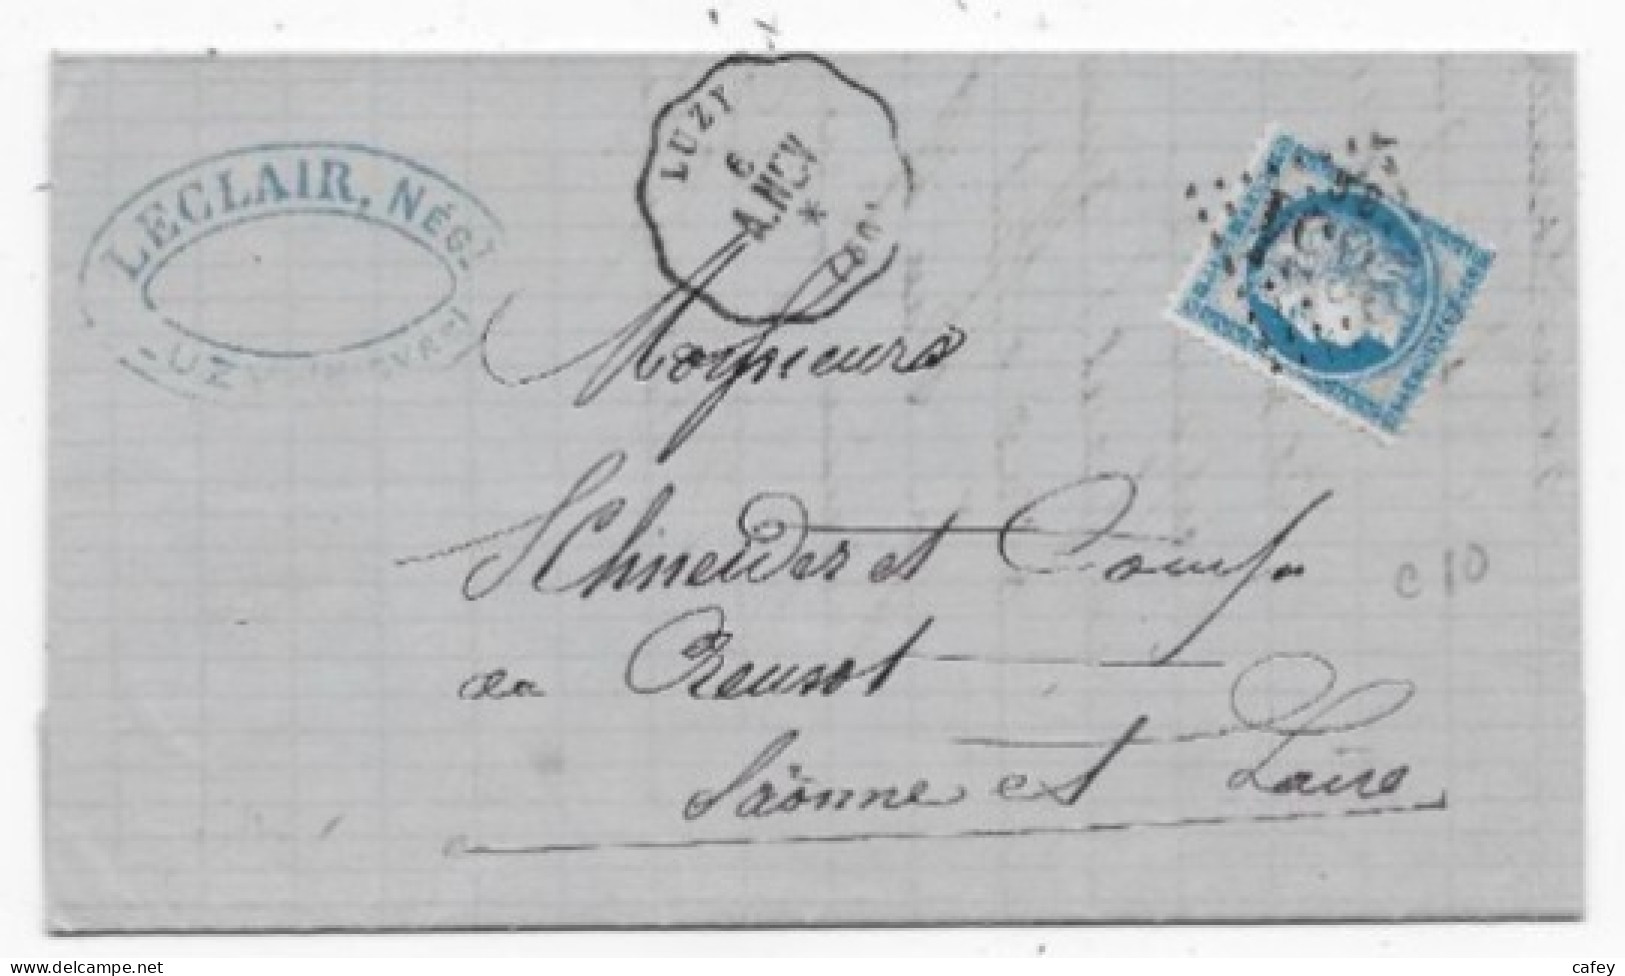 Département NIEVRE Lettre Timbre CERES N°60 CONVOYEUR STATION LUZY Ligne A.NEV - 1849-1876: Periodo Clásico